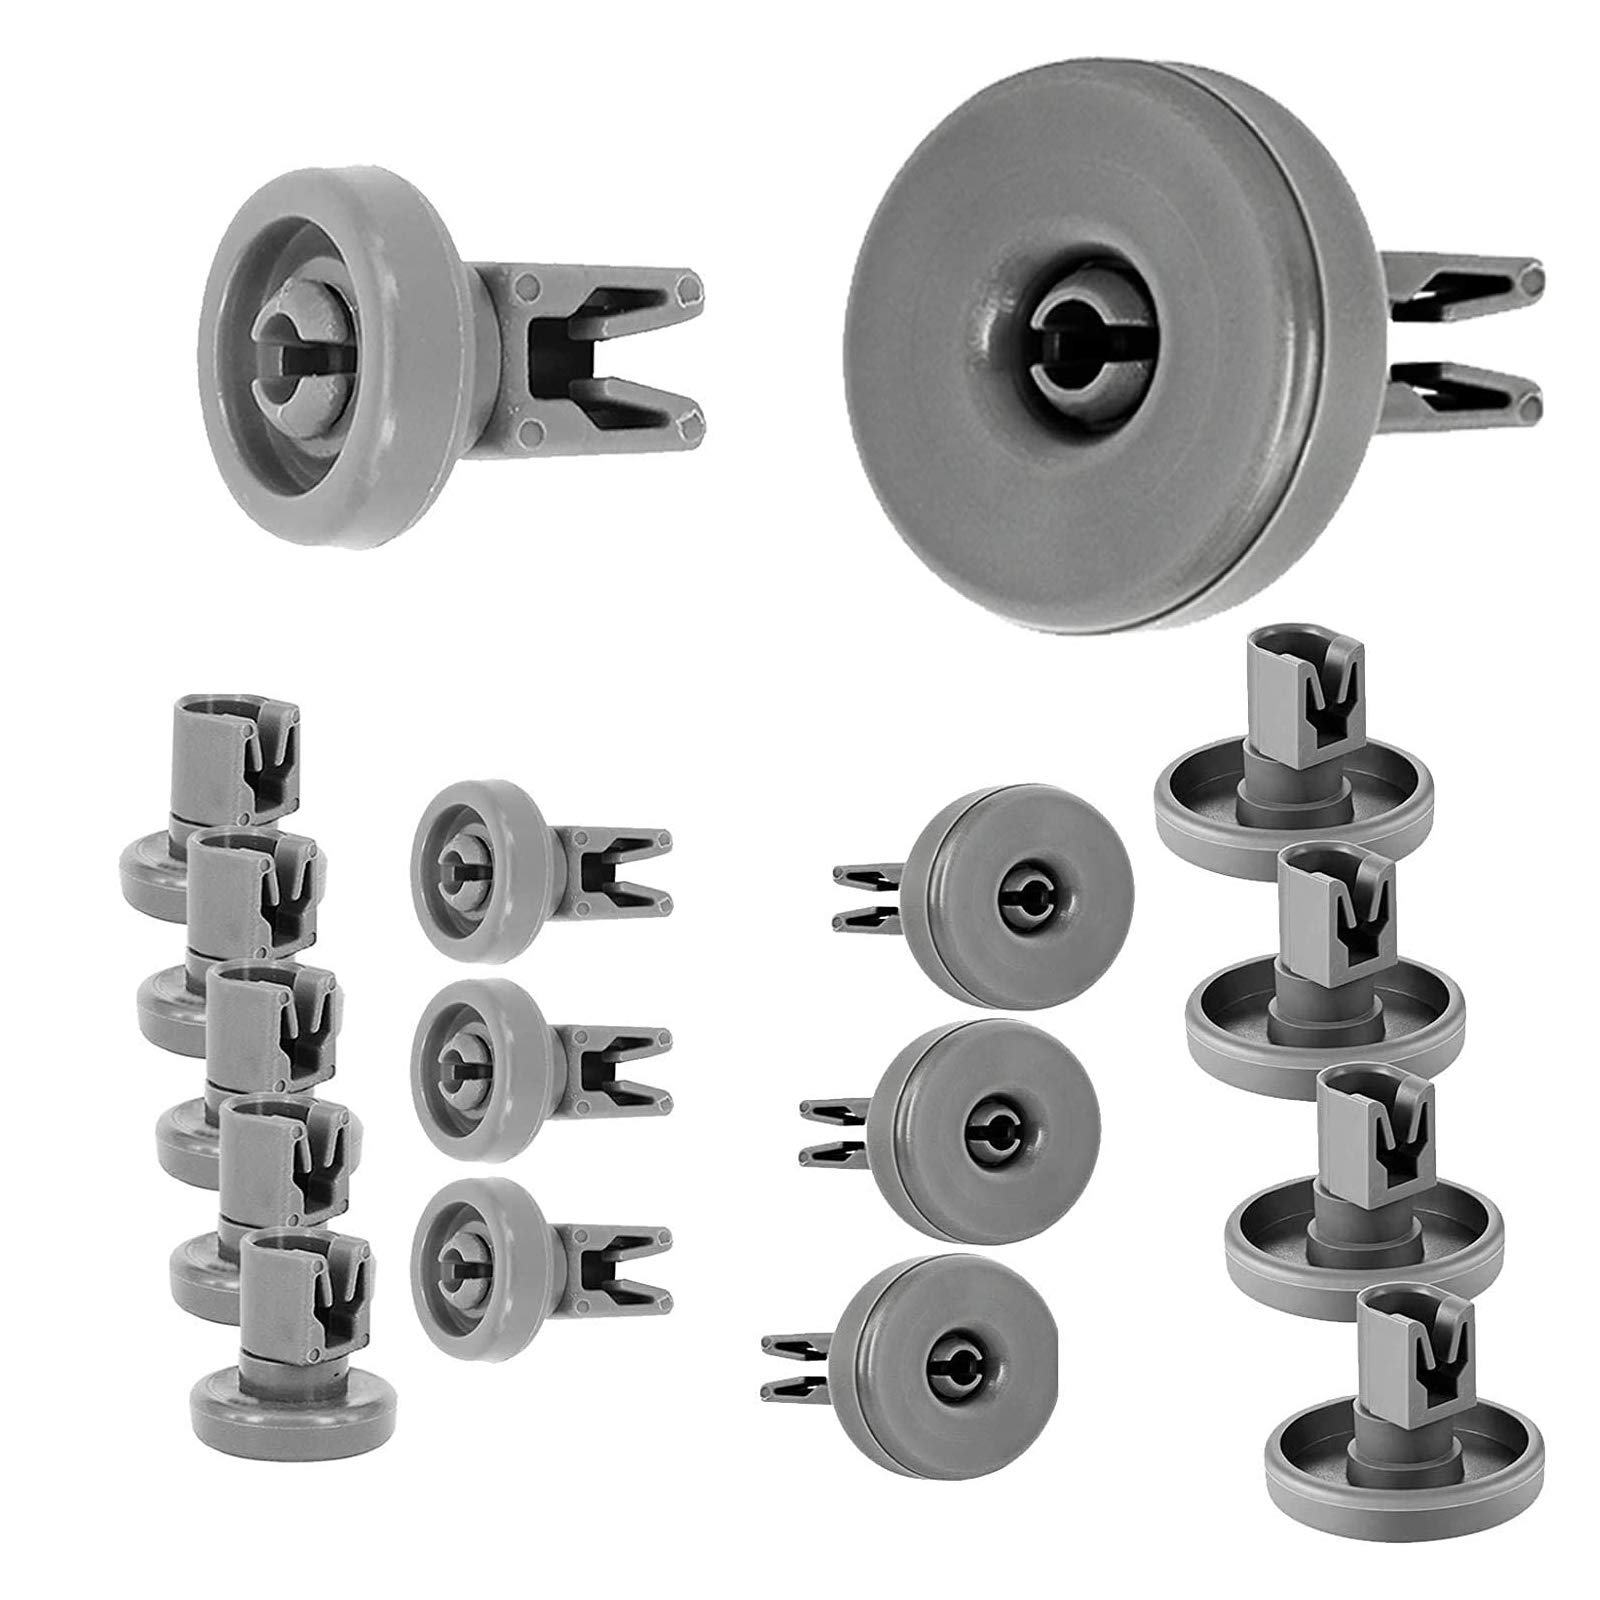 Spares2go Rollen für Whirlpool-Geschirrspüler, 40 mm unten + 25 mm obere Korb-Räder für Whirlpool-Geschirrspüler (16-8 große, 8 kleine)